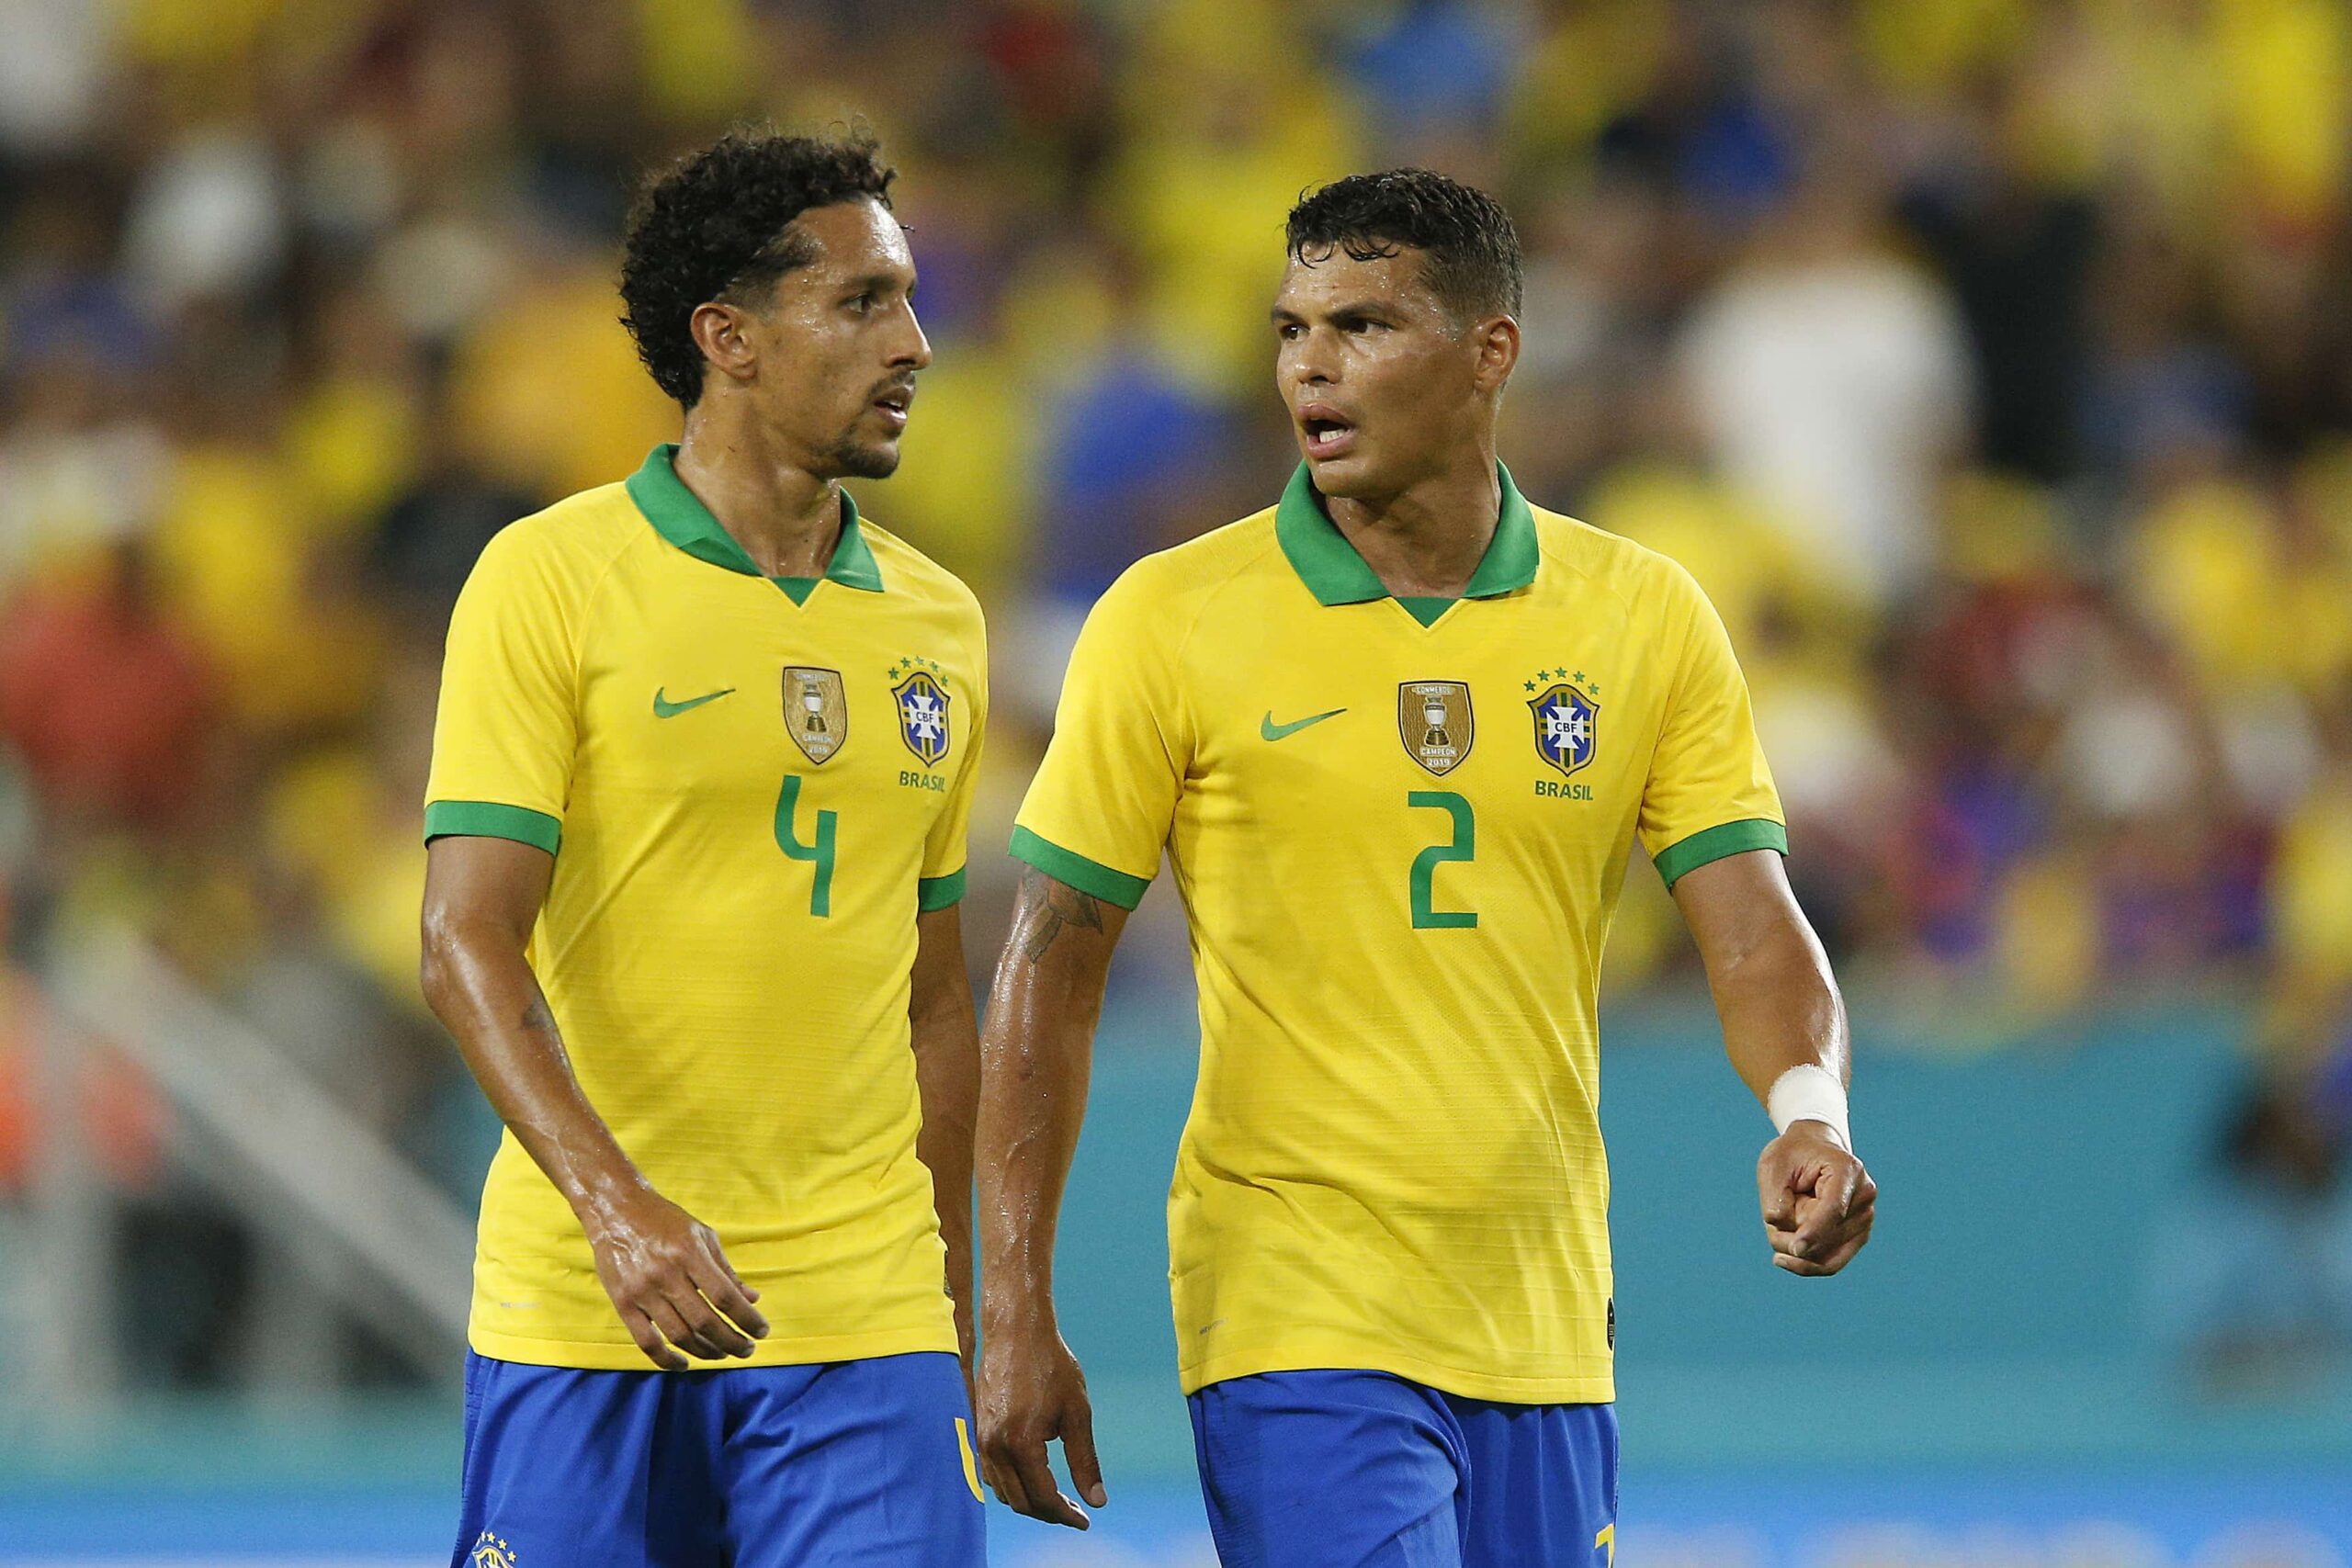 Marquinhos snobe Thiago Silva et révèle son ami proche à la Seleçao, « Je lui dis toujours qu’il n’a pas à porter plus de poids »